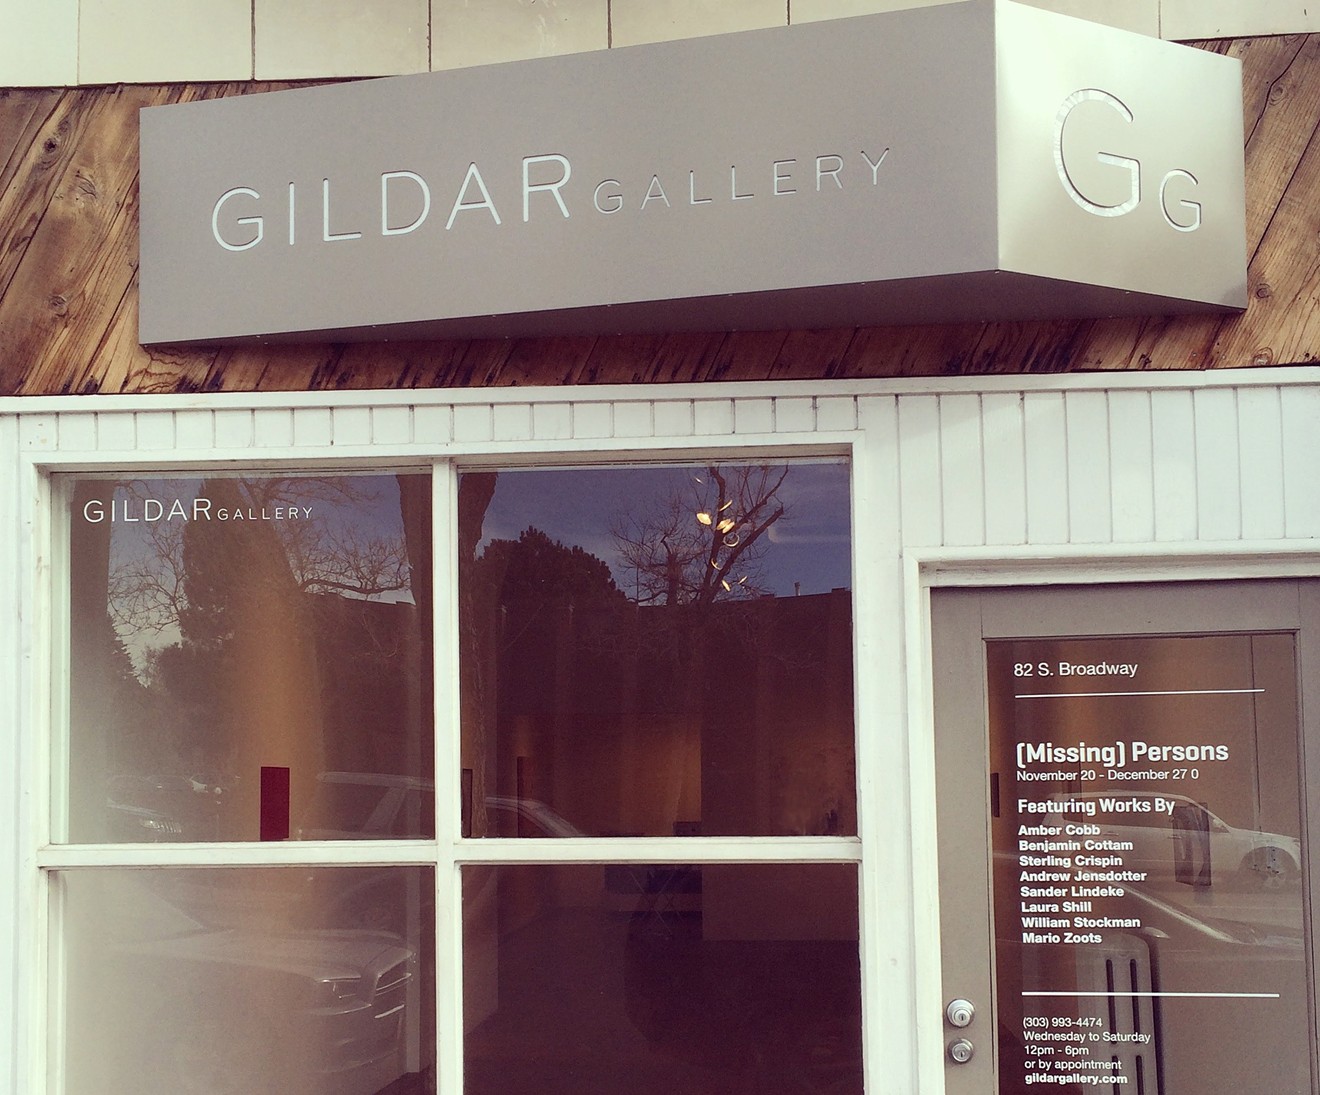 Gildar Gallery closed last weekend.